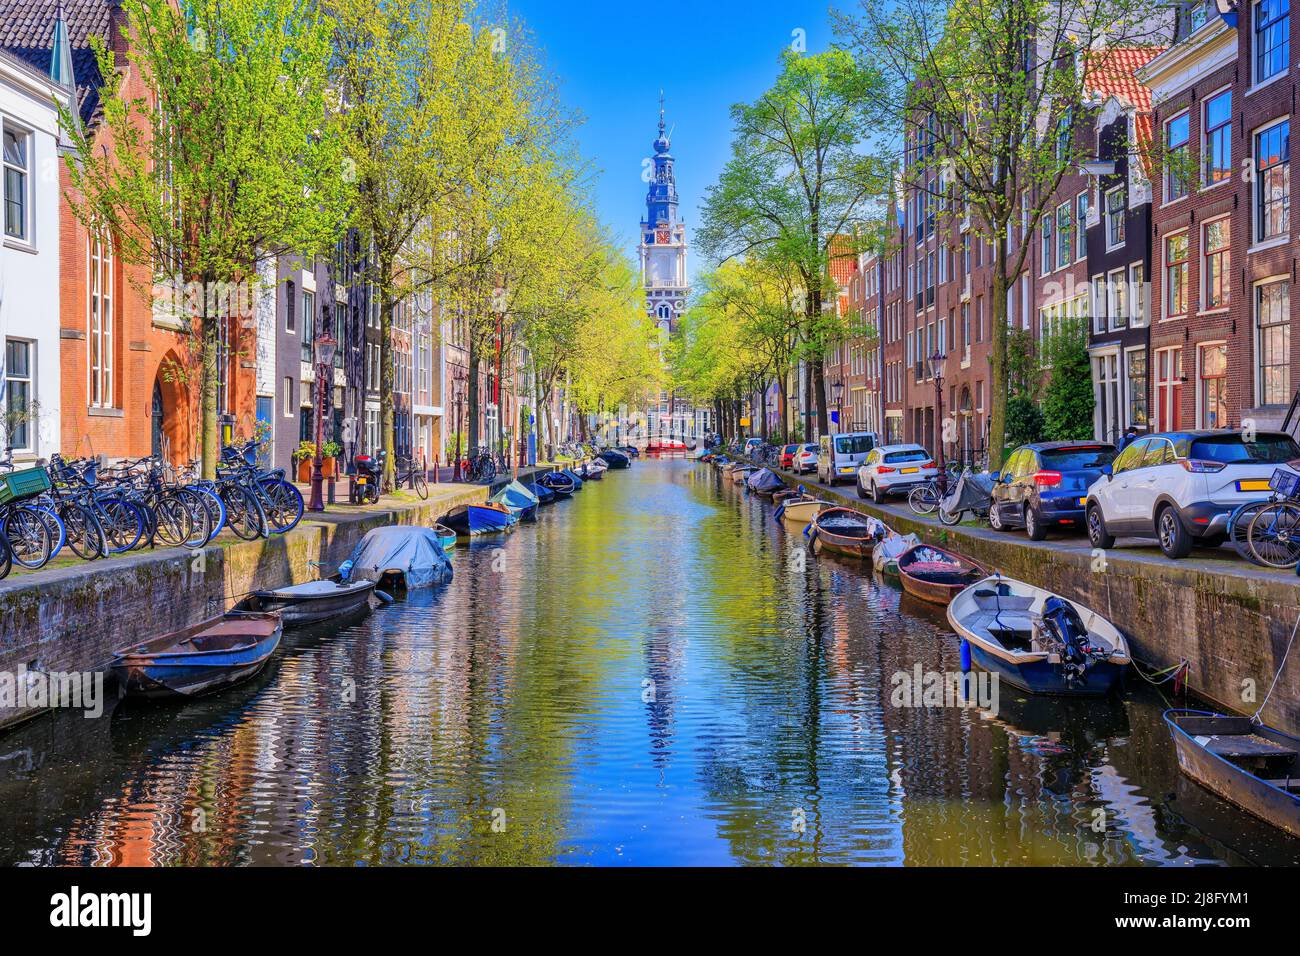 Ámsterdam, Países Bajos. Canal de Groenburgwal con la torre Zuiderkerk en el fondo. Foto de stock